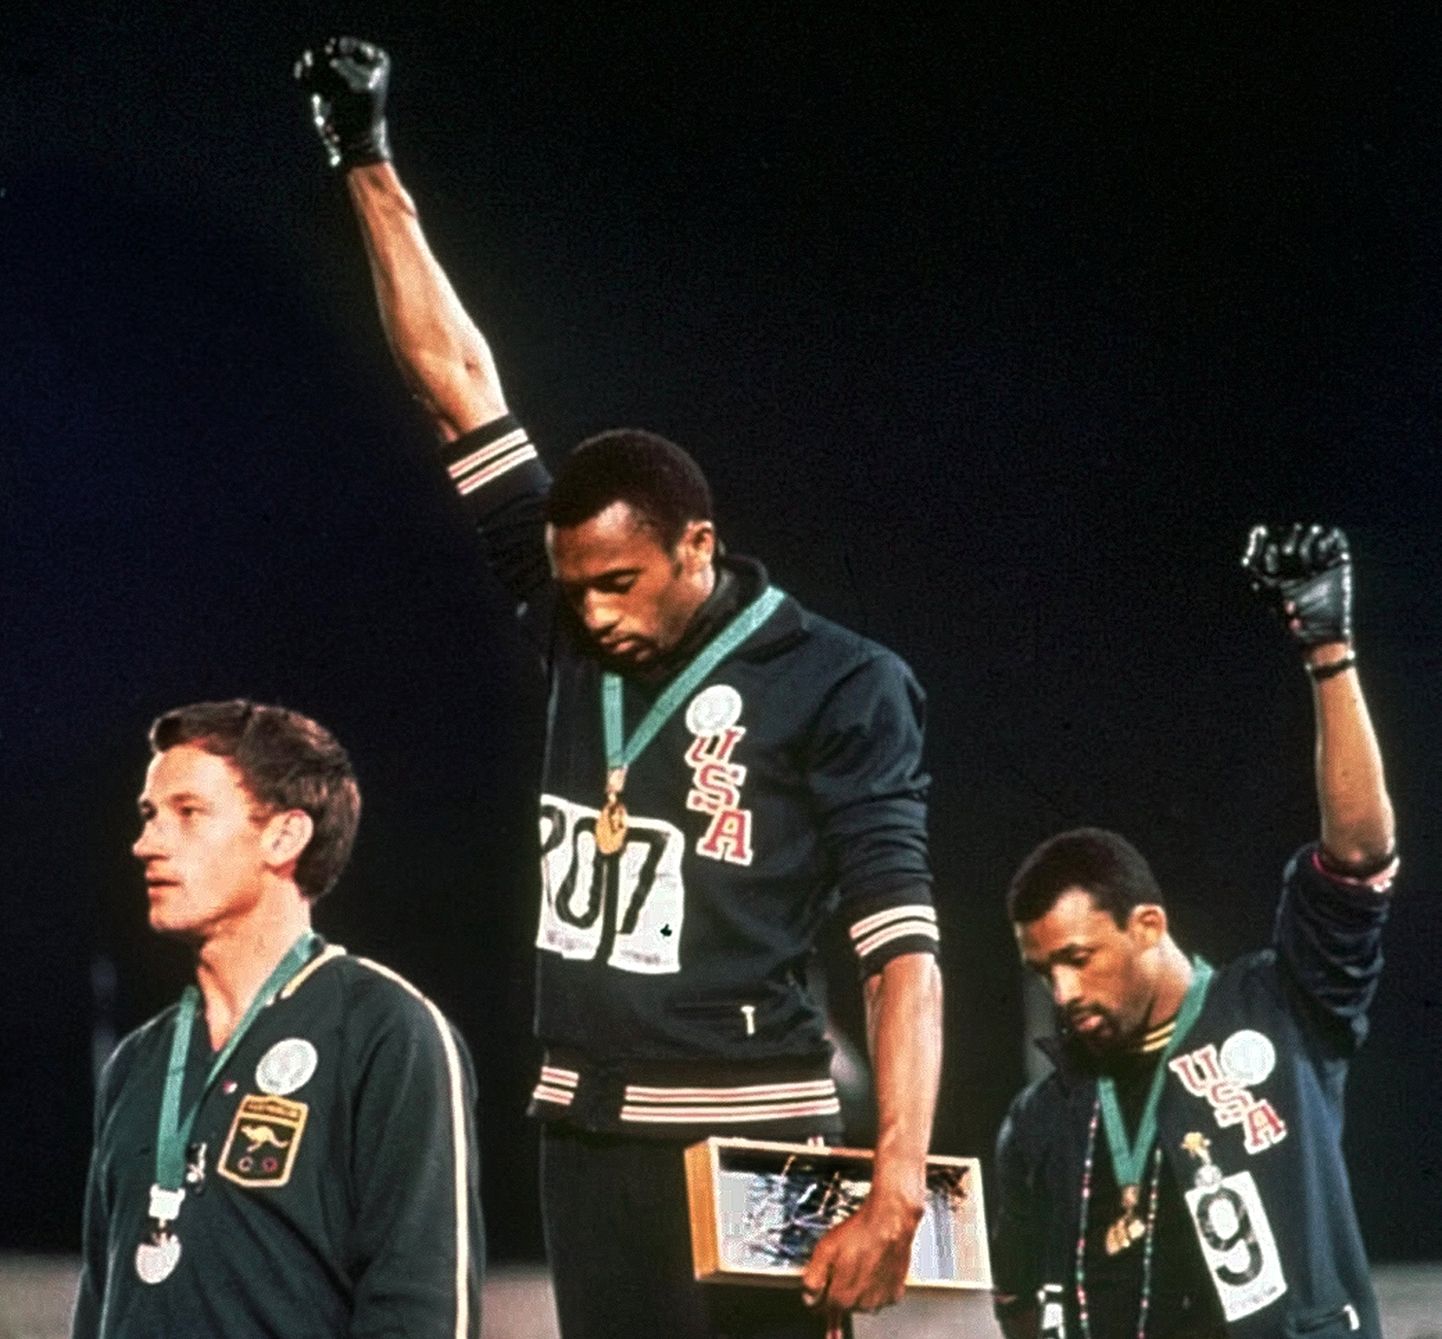 LUBAMATU: Ehkki Rahvusvaheline Olümpiakomitee on poliitilist eneseväljendamist võistlustel veidi lubama hakanud, on sellised žestid ka äsjaalanud Tokyo olümpial täielikult keelatud. Foto on tehtud 1968. aasta México olümpiamängudel, kus autasustamistseremoonial protestisid USA sportlased Tommie Smith (keskel) ja John Carlos nende kodumaal valitseva rassismi vastu. Nende ees seisab hõbemedalist, Austraalia sportlane Peter Norman.